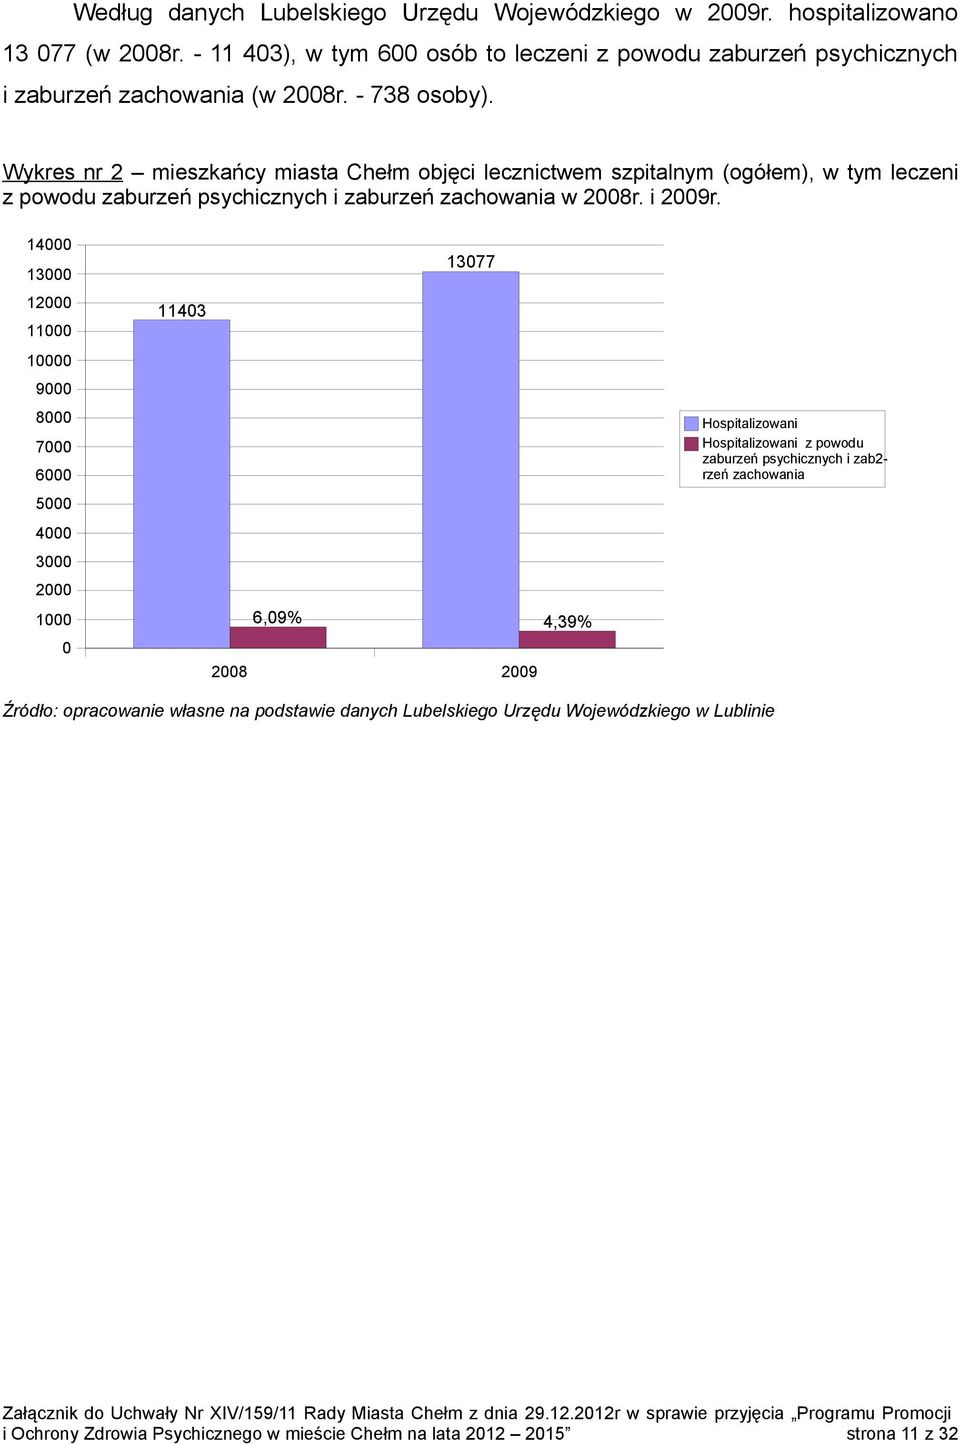 Wykres nr 2 mieszkańcy miasta Chełm objęci lecznictwem szpitalnym (ogółem), w tym leczeni z powodu zaburzeń psychicznych i zaburzeń zachowania w 2008r. i 2009r.